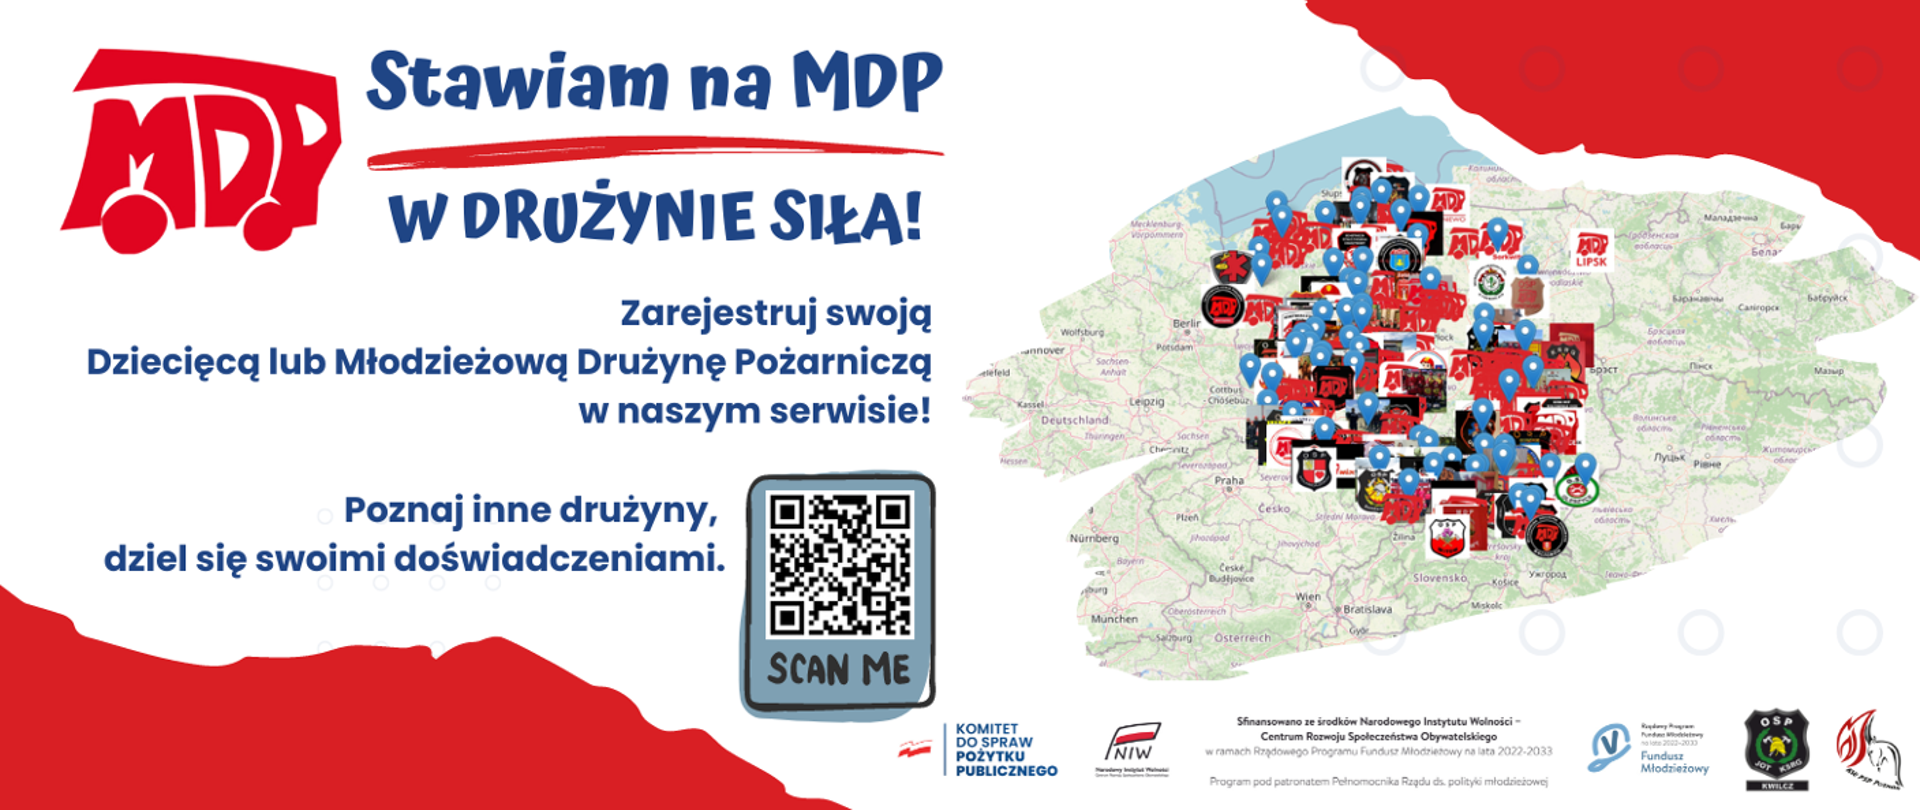 Zarejestruj DDP i MDP w serwisie: www.stawiamnamdp.pl